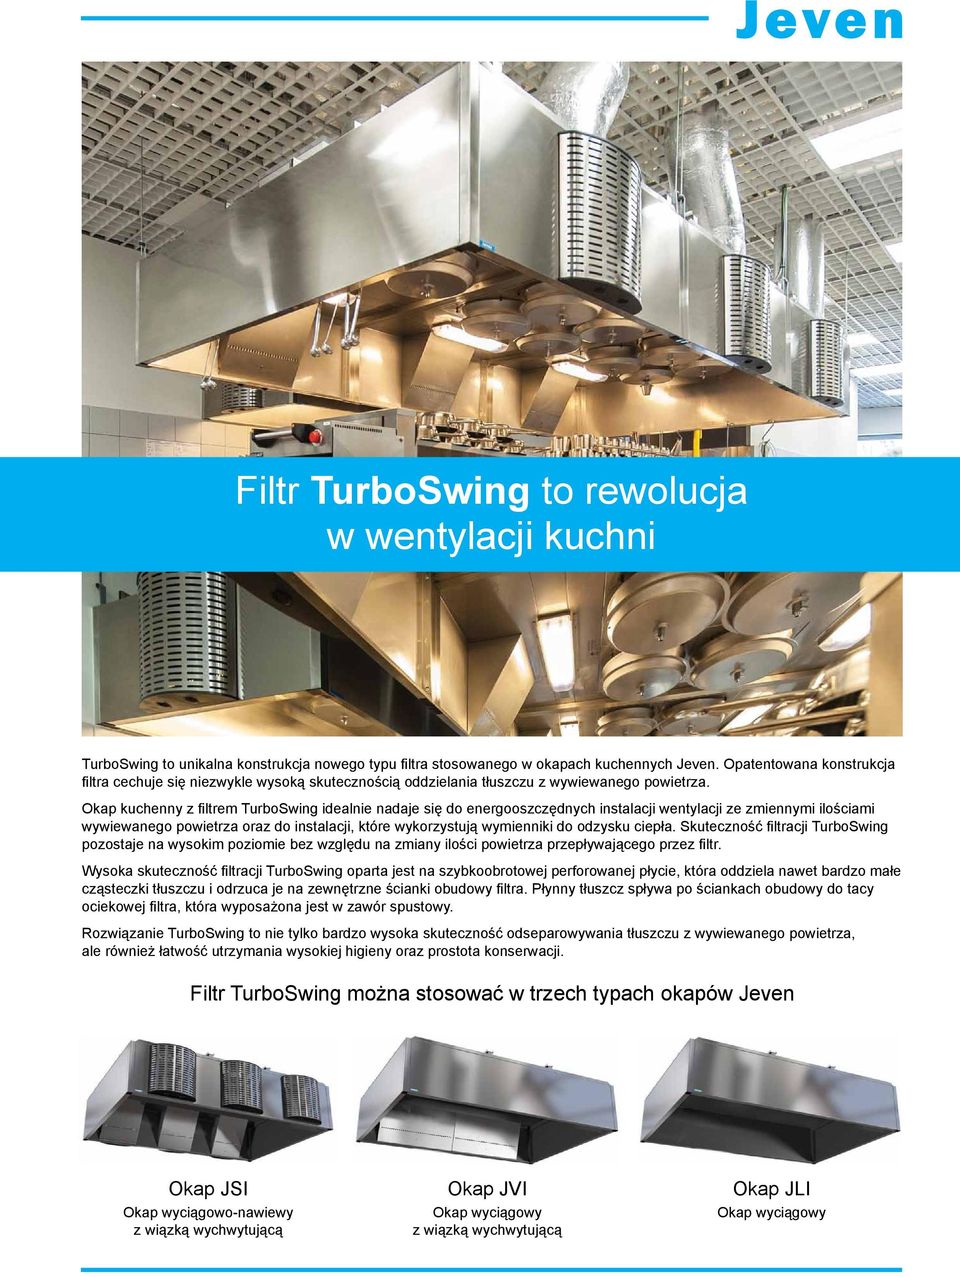 Okap kuchenny z filtrem TurboSwing idealnie nadaje się do energooszczędnych instalacji wentylacji ze zmiennymi ilościami wywiewanego powietrza oraz do instalacji, które wykorzystują wymienniki do